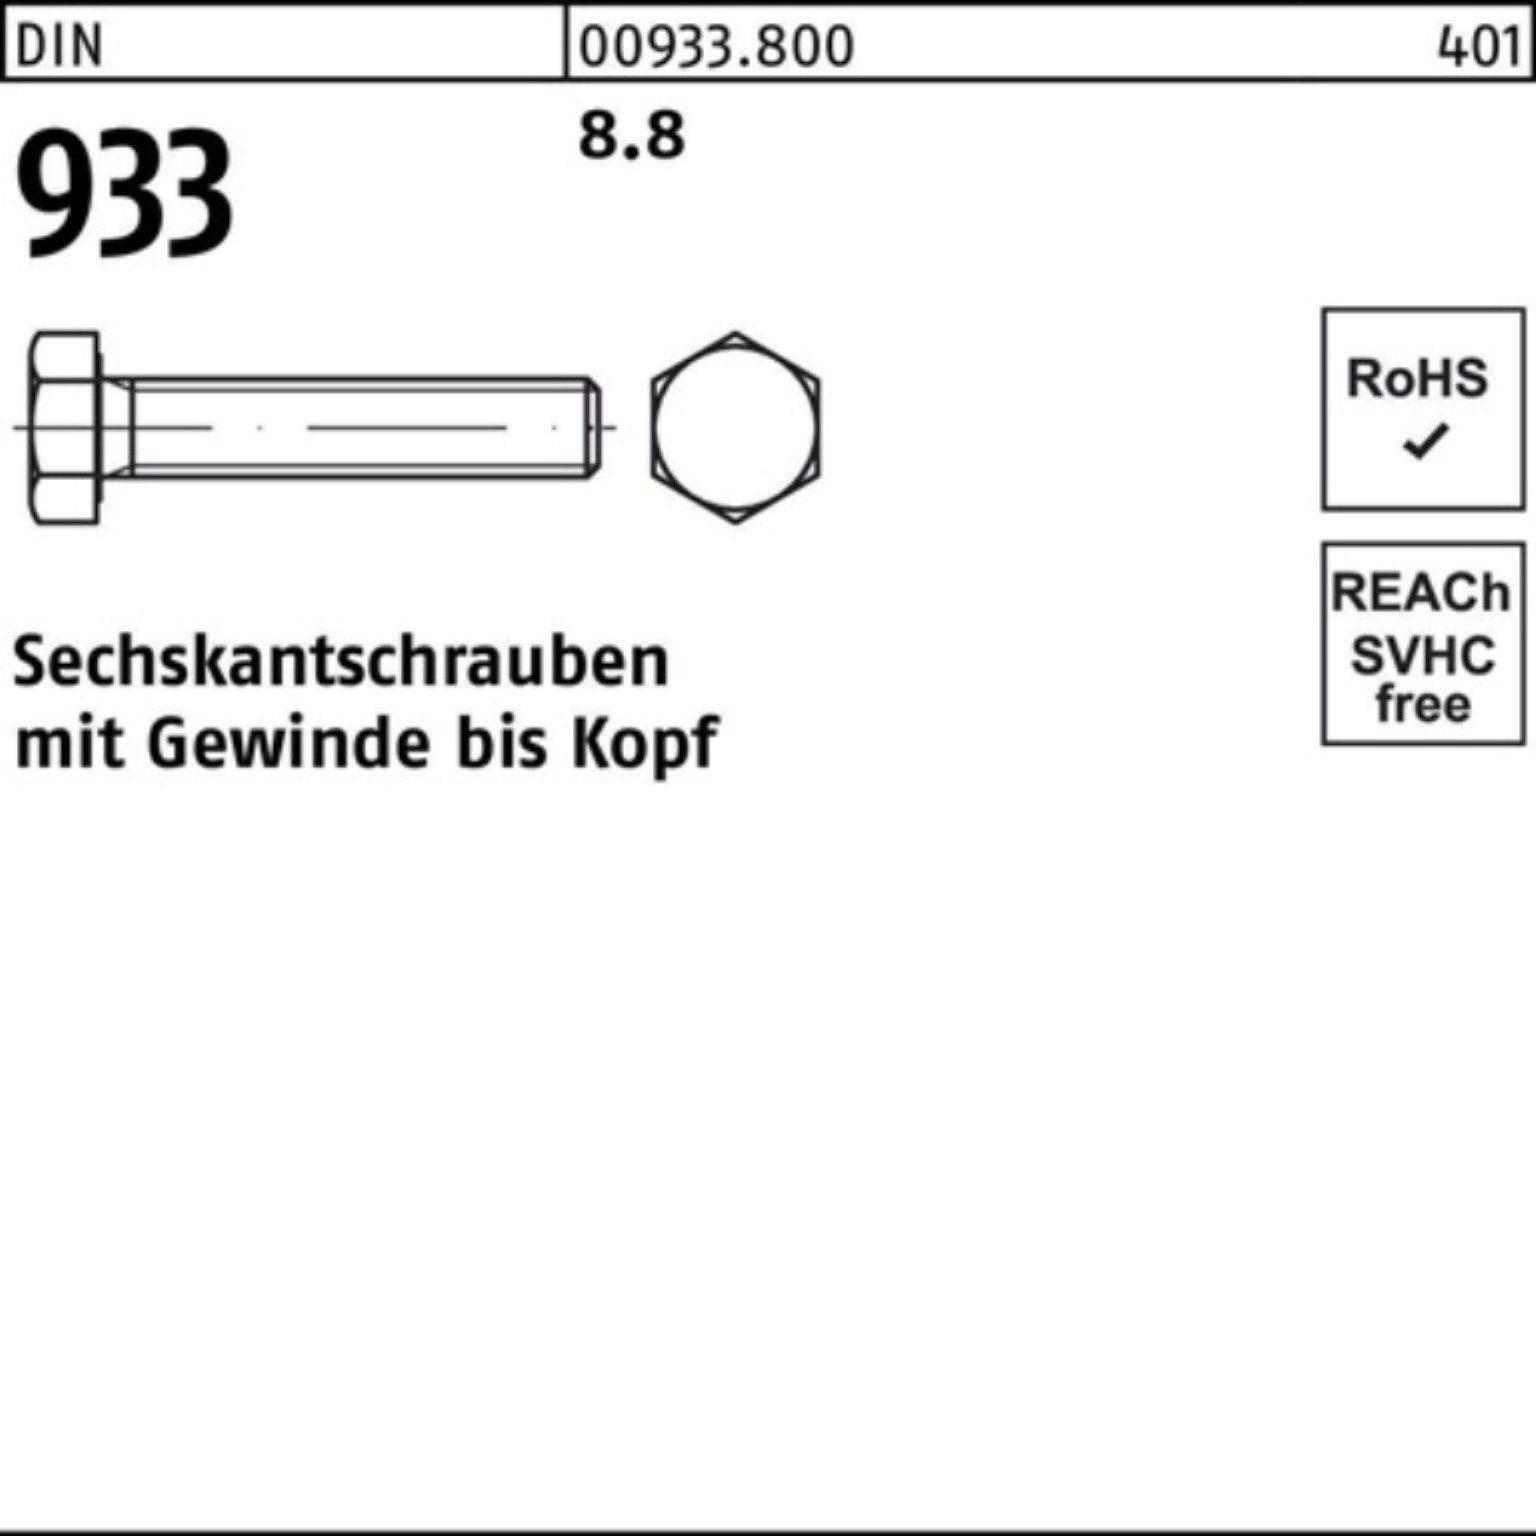 100er Sechskantschraube Sechskantschraube 60 Reyher 8.8 DIN 933 933 Stück Pack VG 1 DIN M30x 8